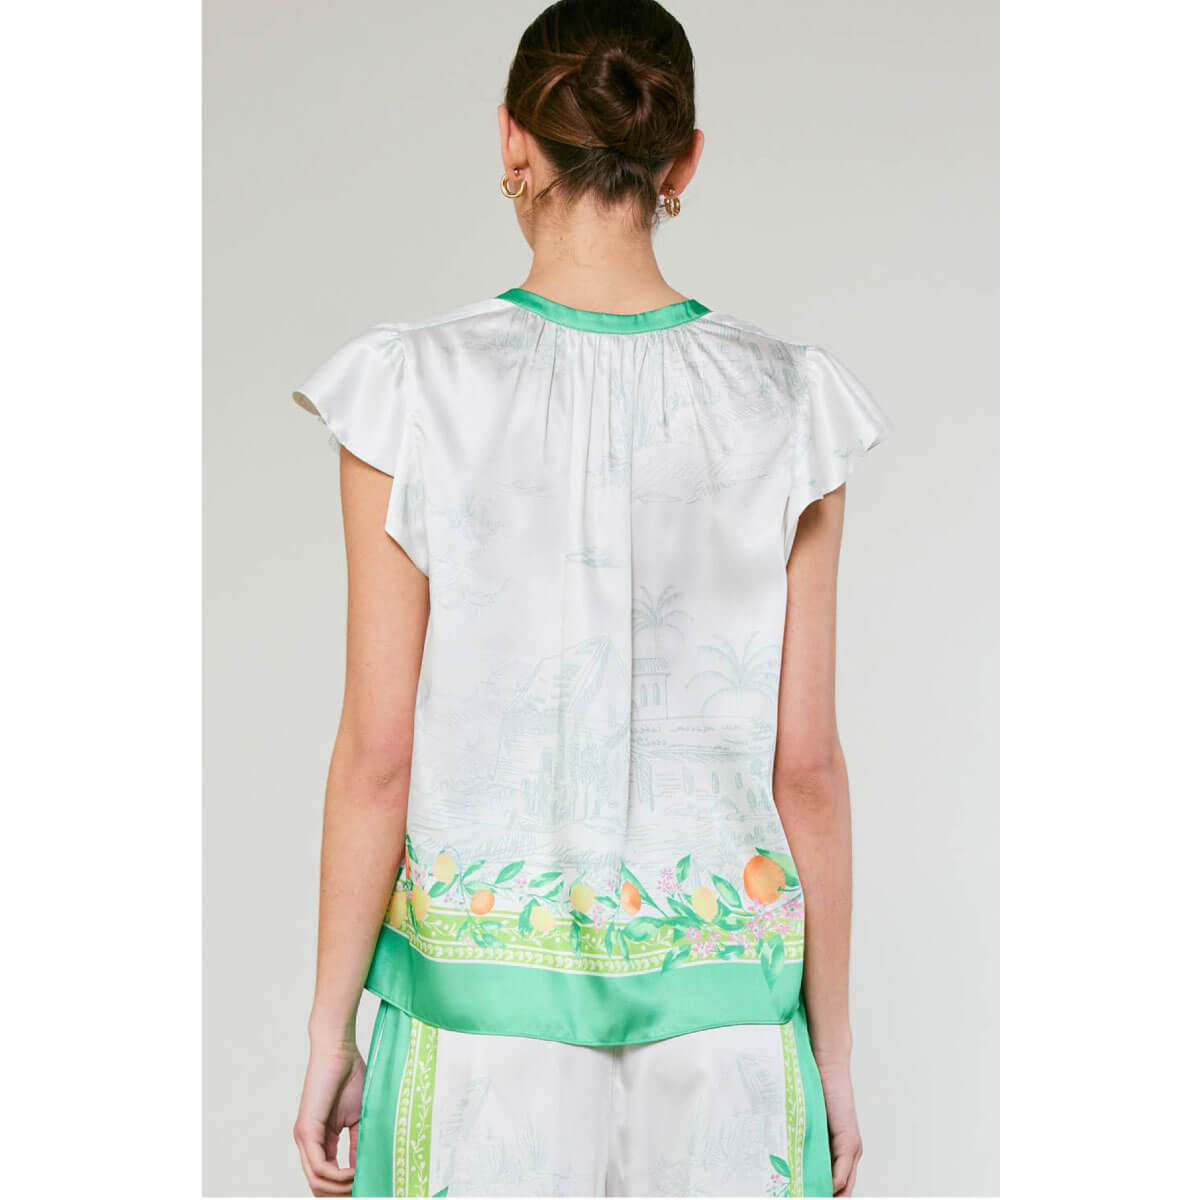 Lemon Garden Print Flutter Sleeve Top green back | MILK MONEY milkmoney.co | cute tops for women. trendy tops for women. cute blouses for women. stylish tops for women. pretty womens tops.